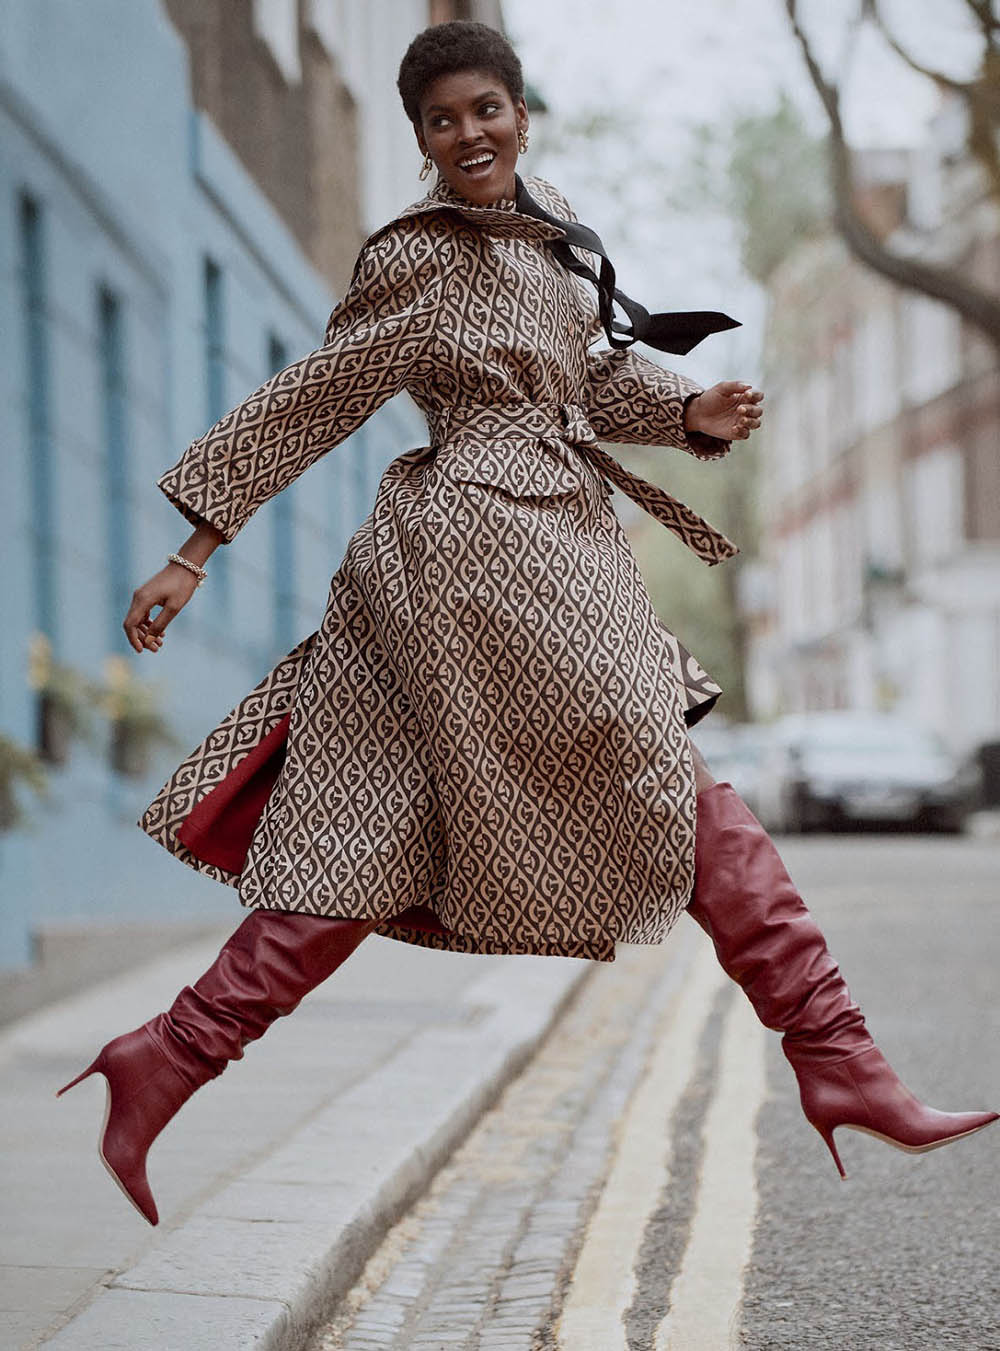 Amilna Estêvão by Regan Cameron for Harper’s Bazaar UK September 2019